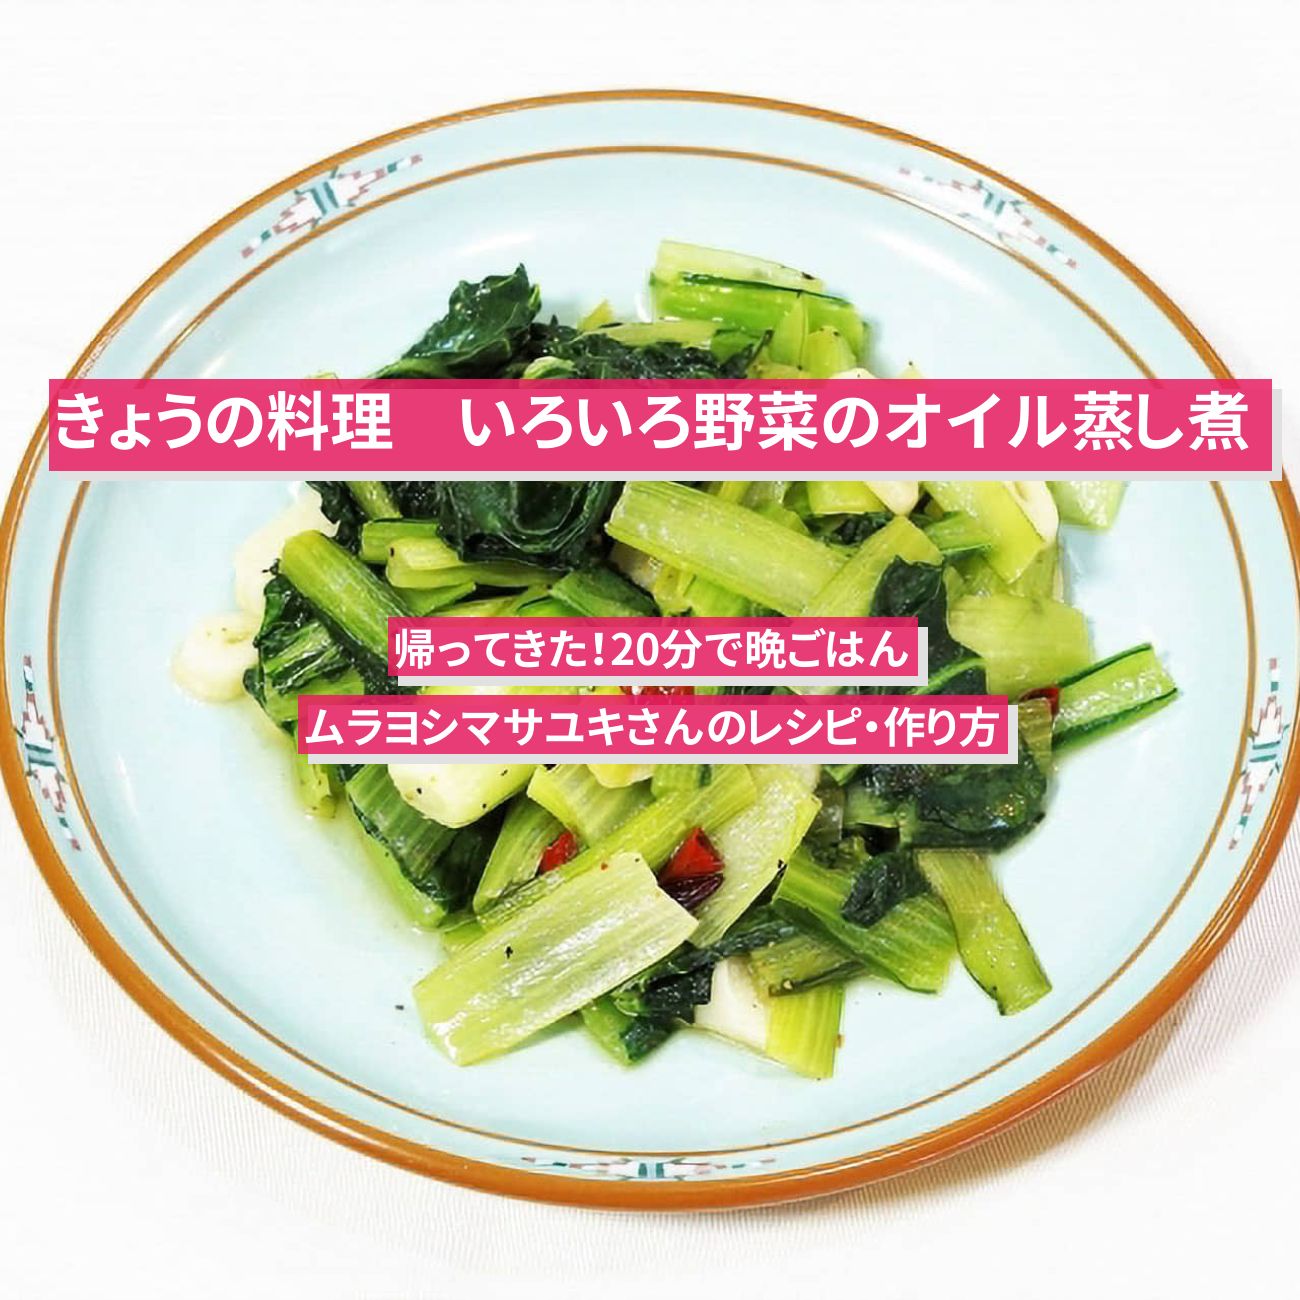 【きょうの料理】『いろいろ野菜のオイル蒸し煮』ムラヨシマサユキさんのレシピ・作り方